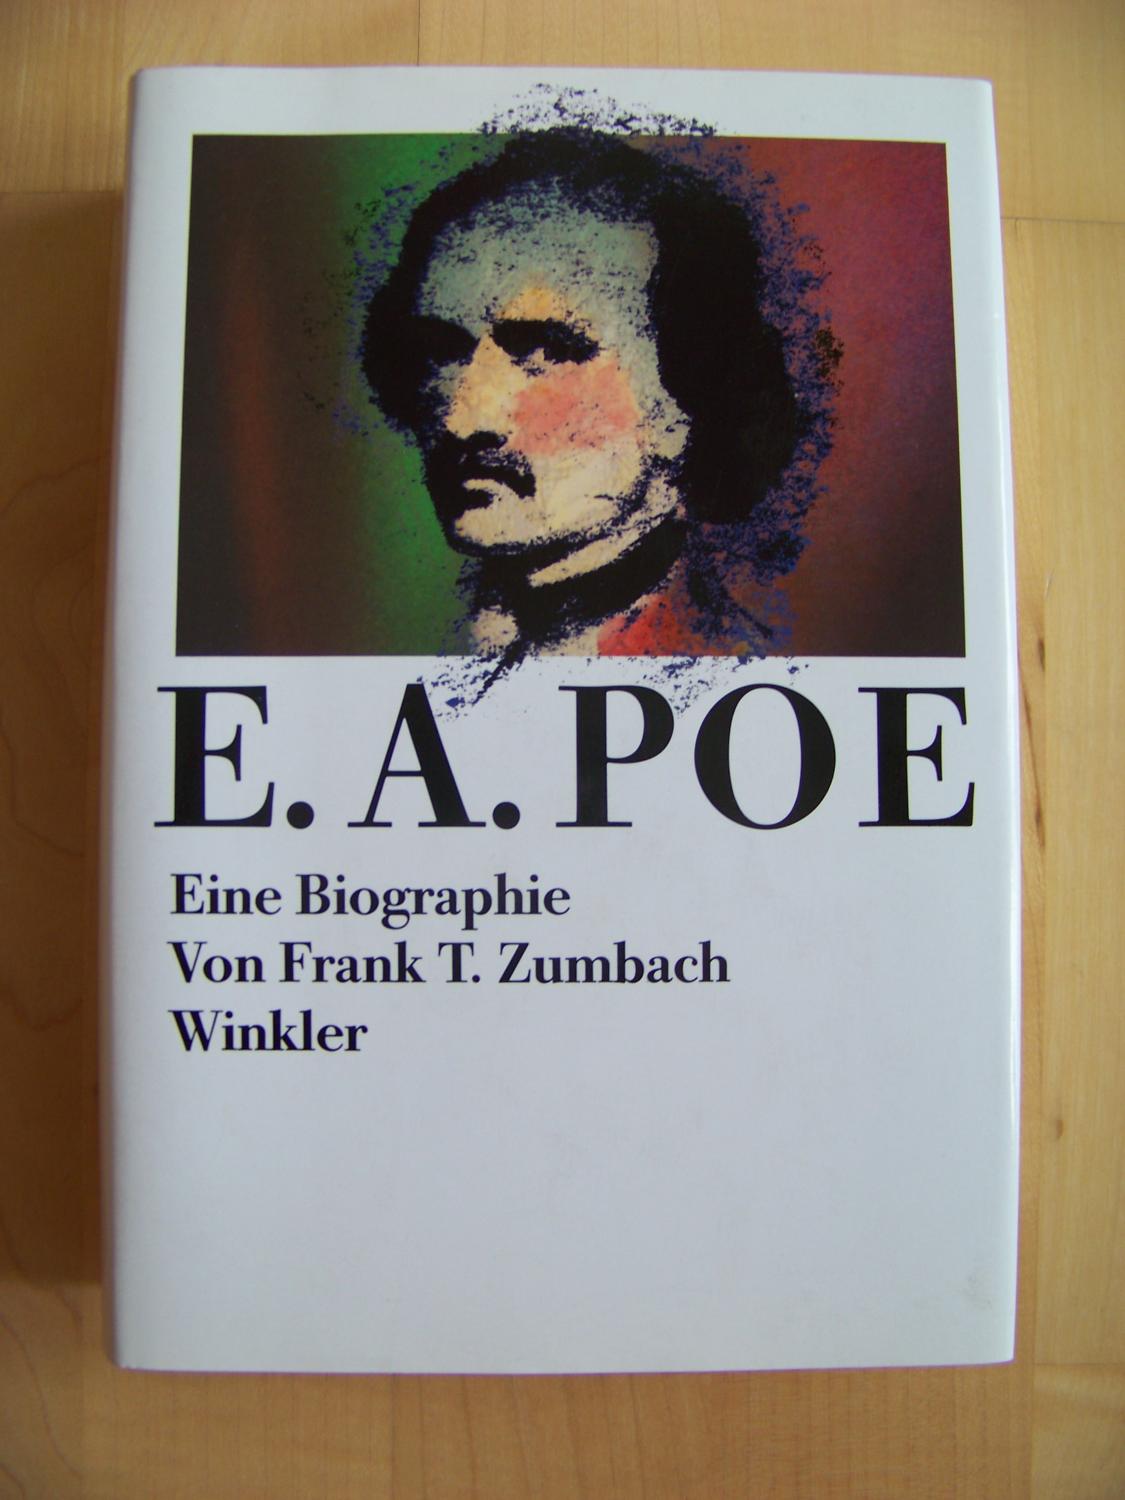 Edgar Allan Poe. Eine Biographie